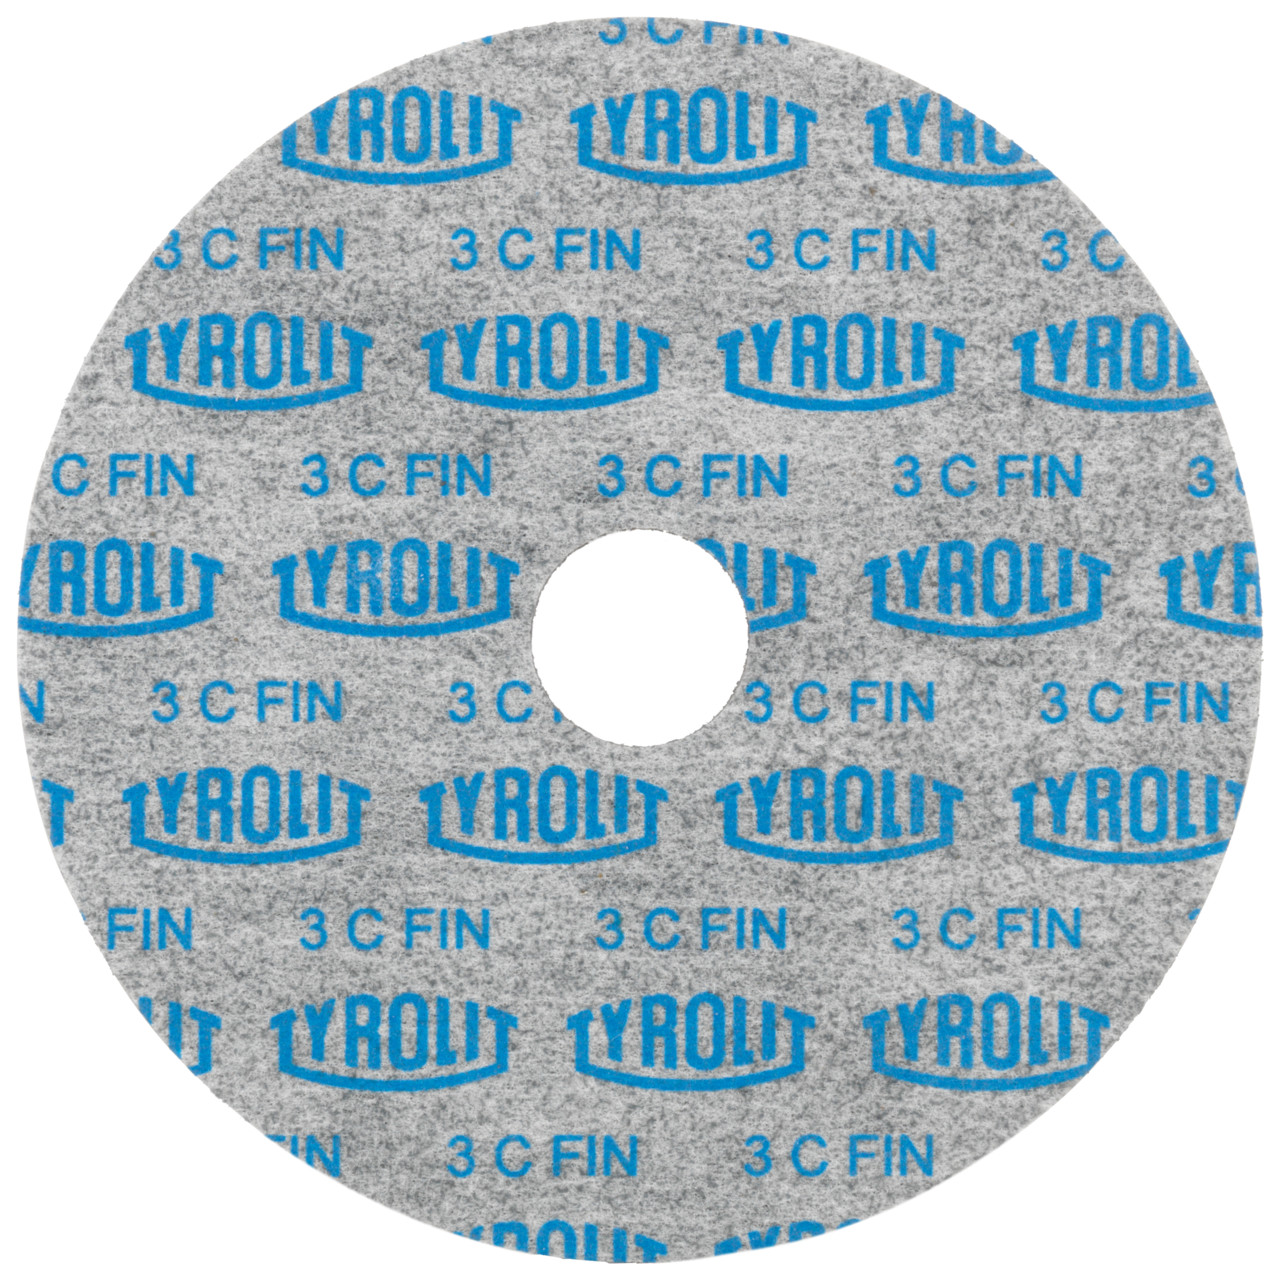 Tyrolit Discos compactos prensados DxDxH 152x6x25,4 De uso universal, 2 A MEDIO, forma: 1, Art. 34190274